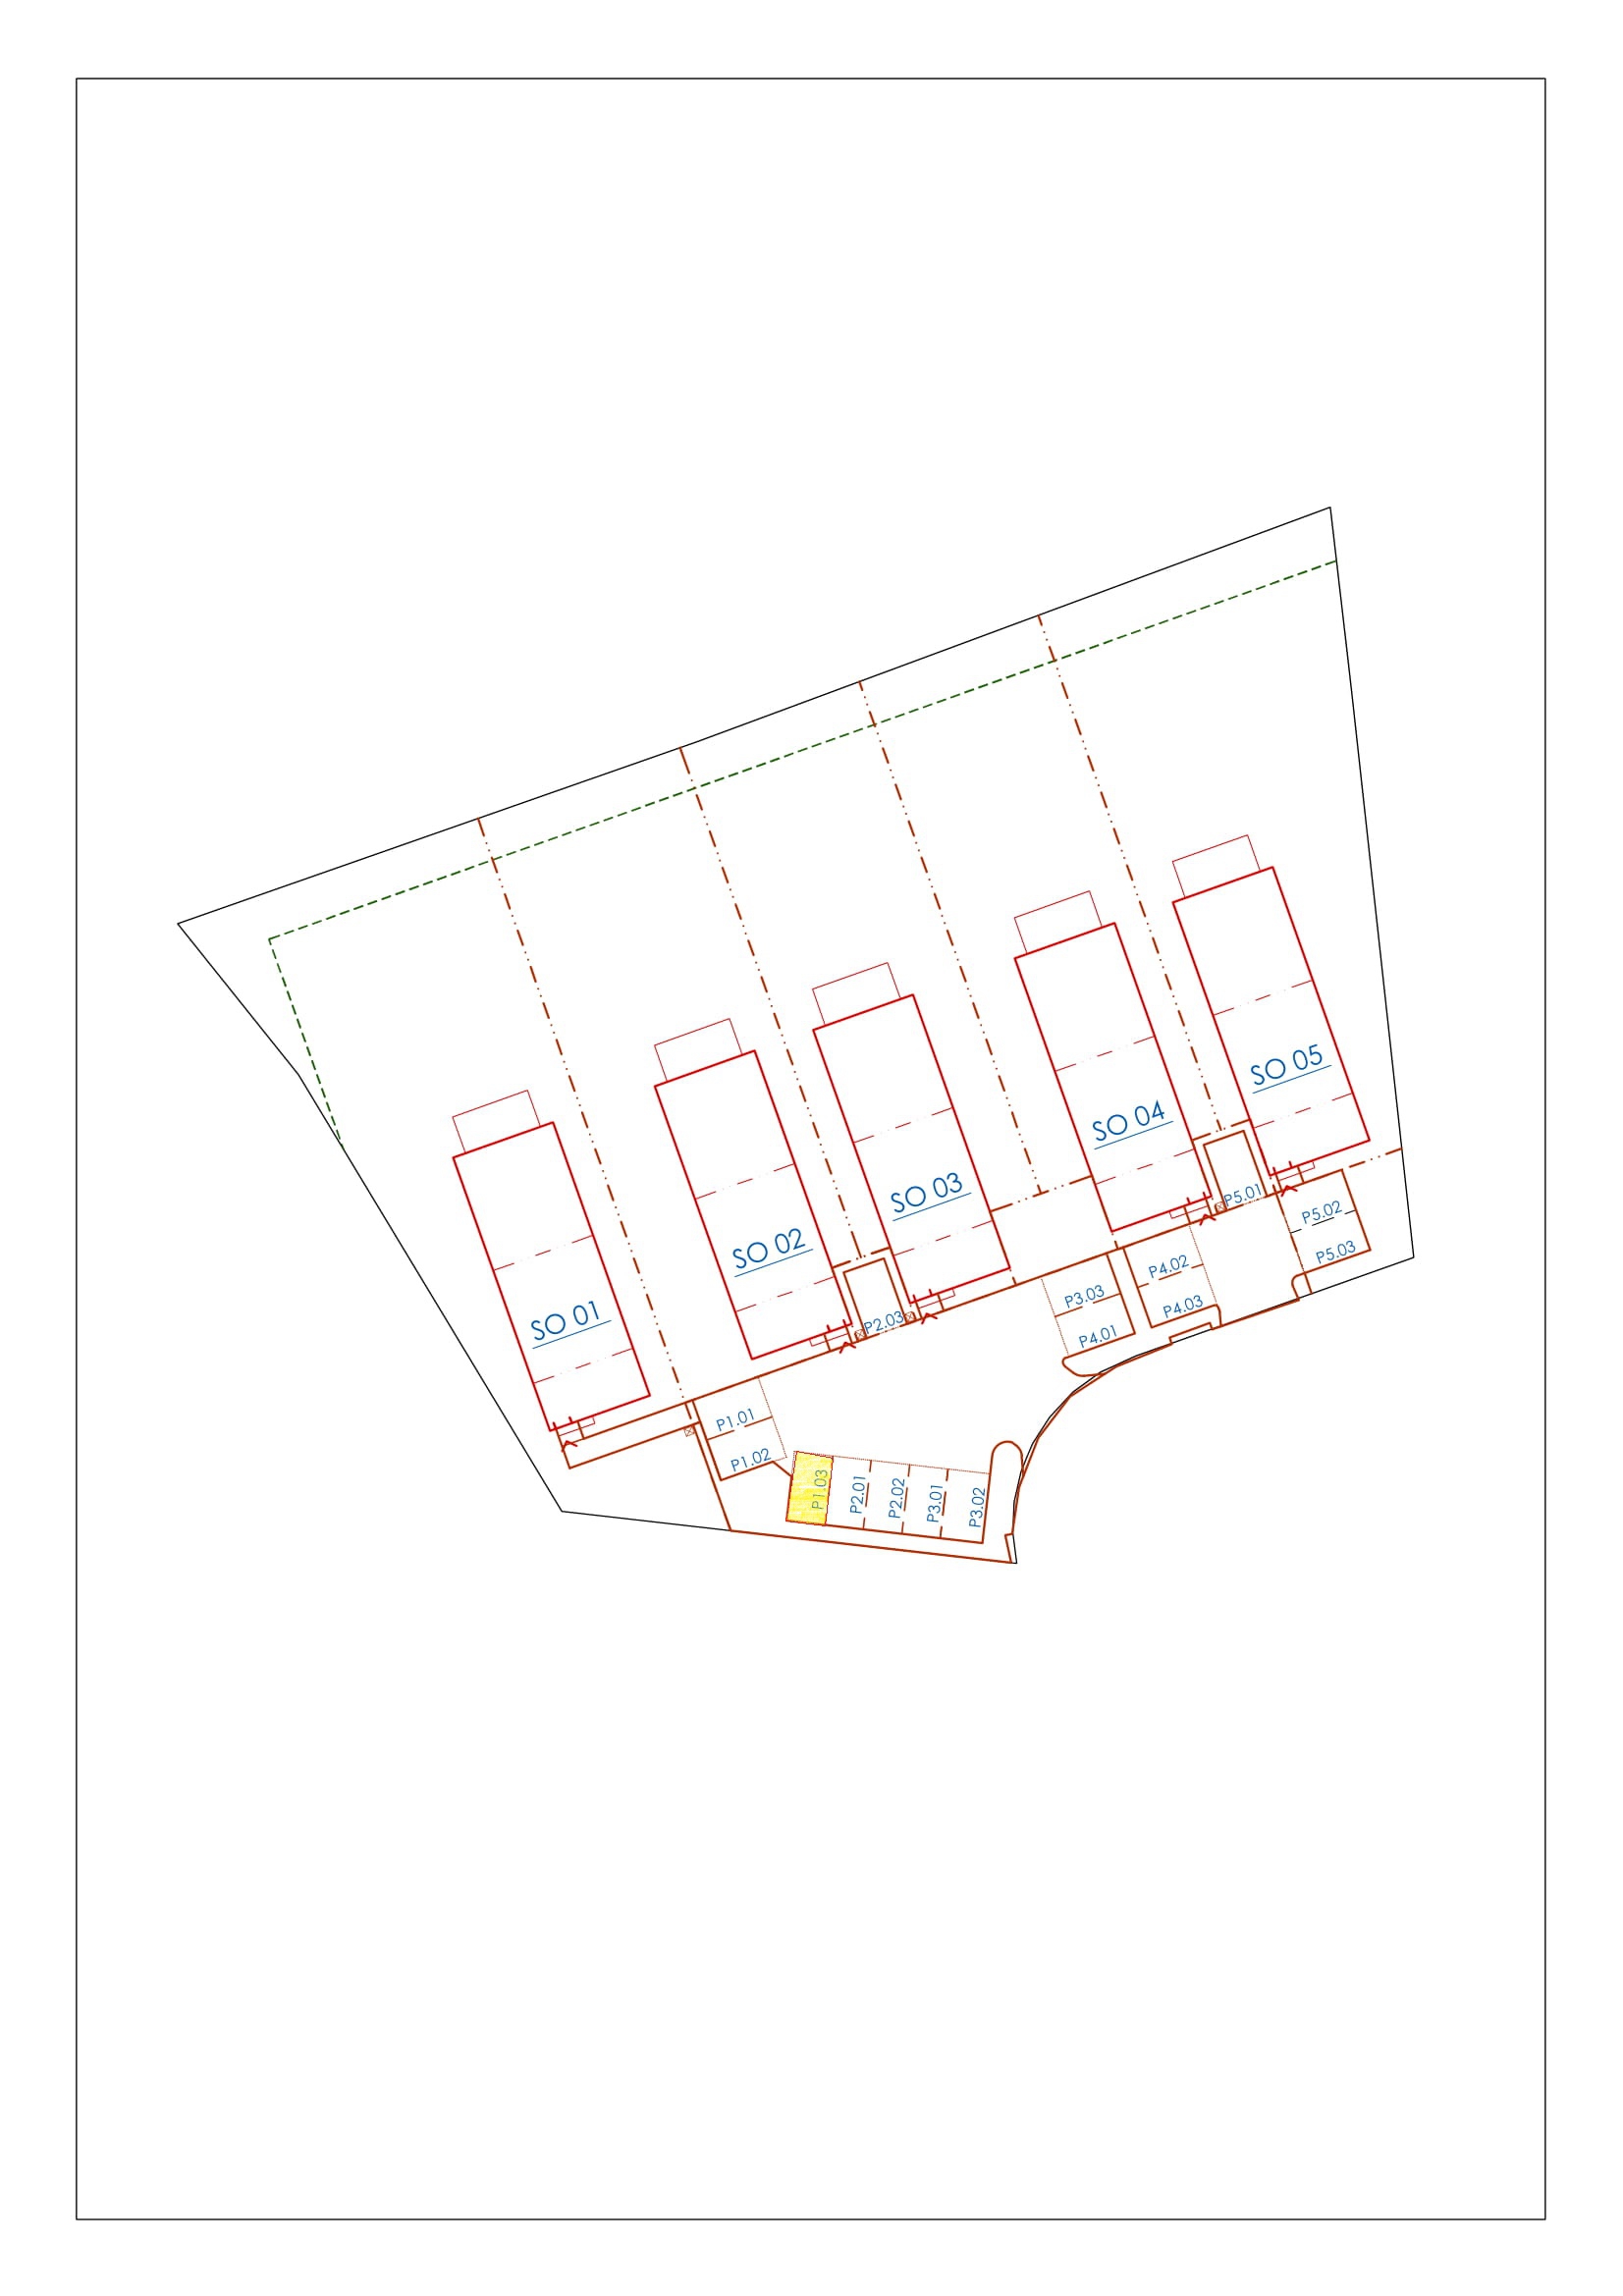 RD BORSOV_schéma parkovacích stání - kopie1.jpg